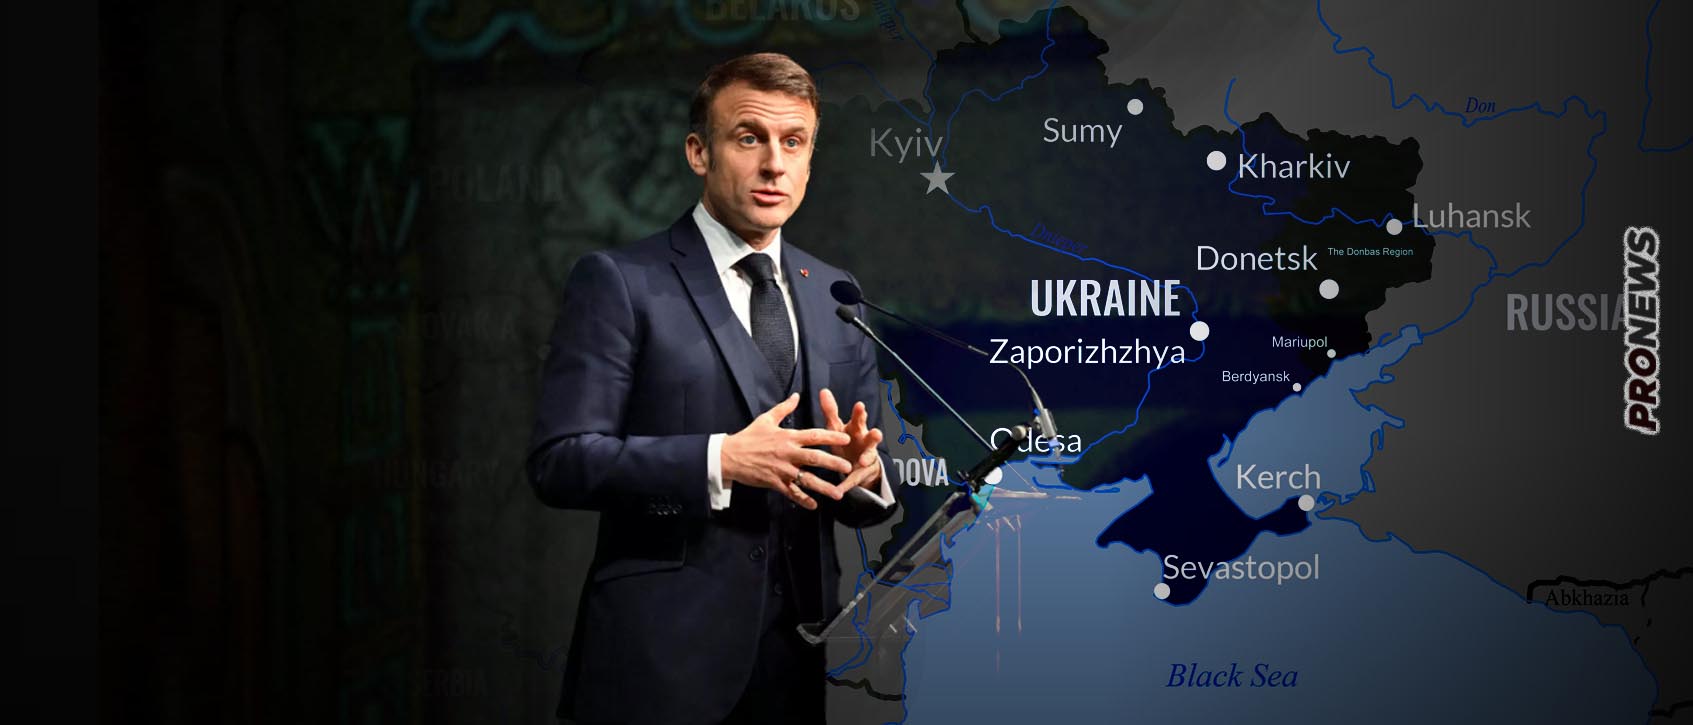 O Ε.Μακρόν σέρνει την Ευρώπη στην άβυσσο του πολέμου της Ουκρανίας: «Δεν  πρέπει να είμαστε δειλοί – Να πολεμήσουμε» – Pronews.gr